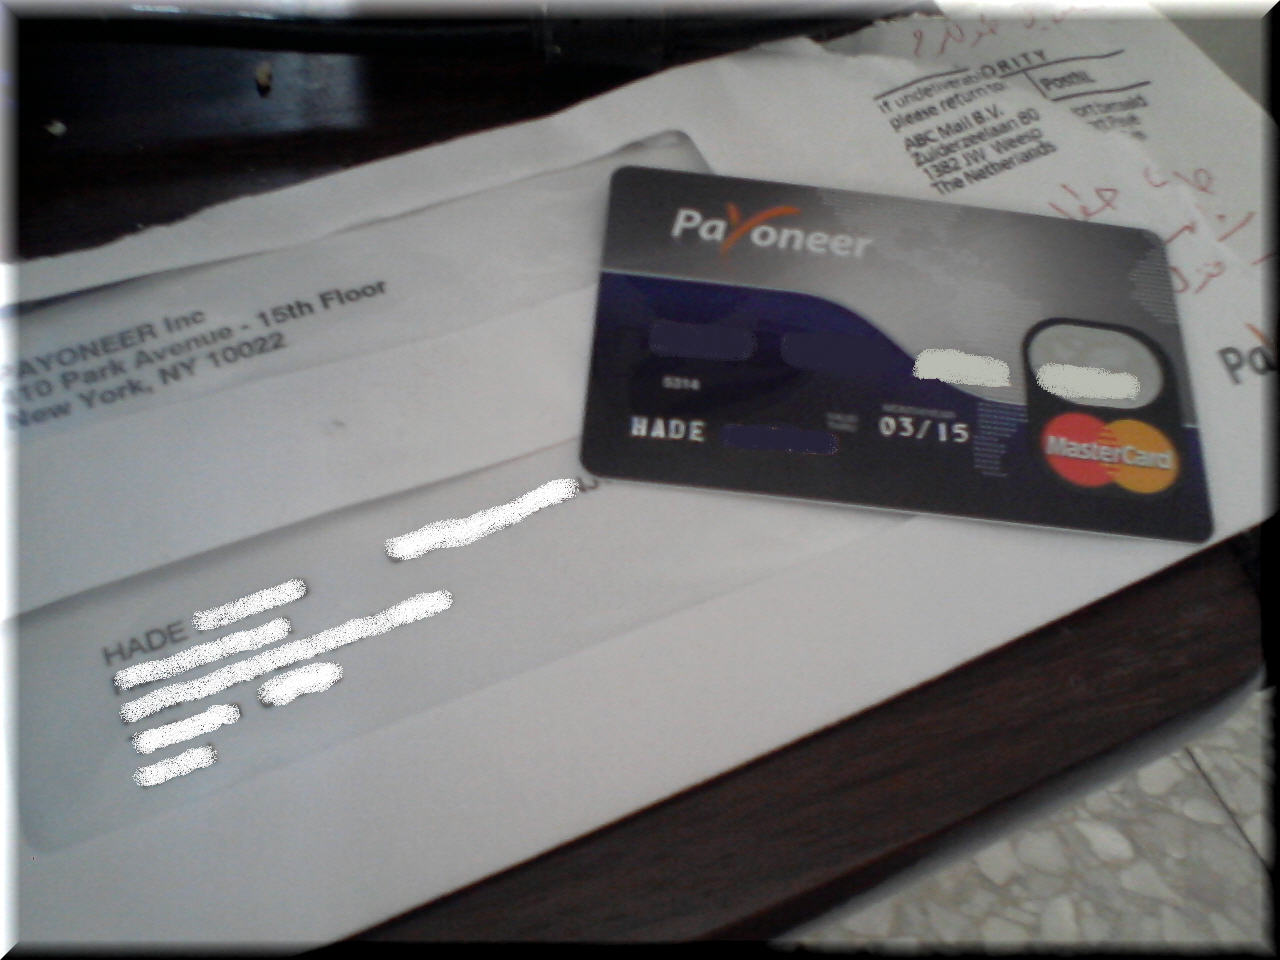    Payoneer Mastercard       +  Paypal